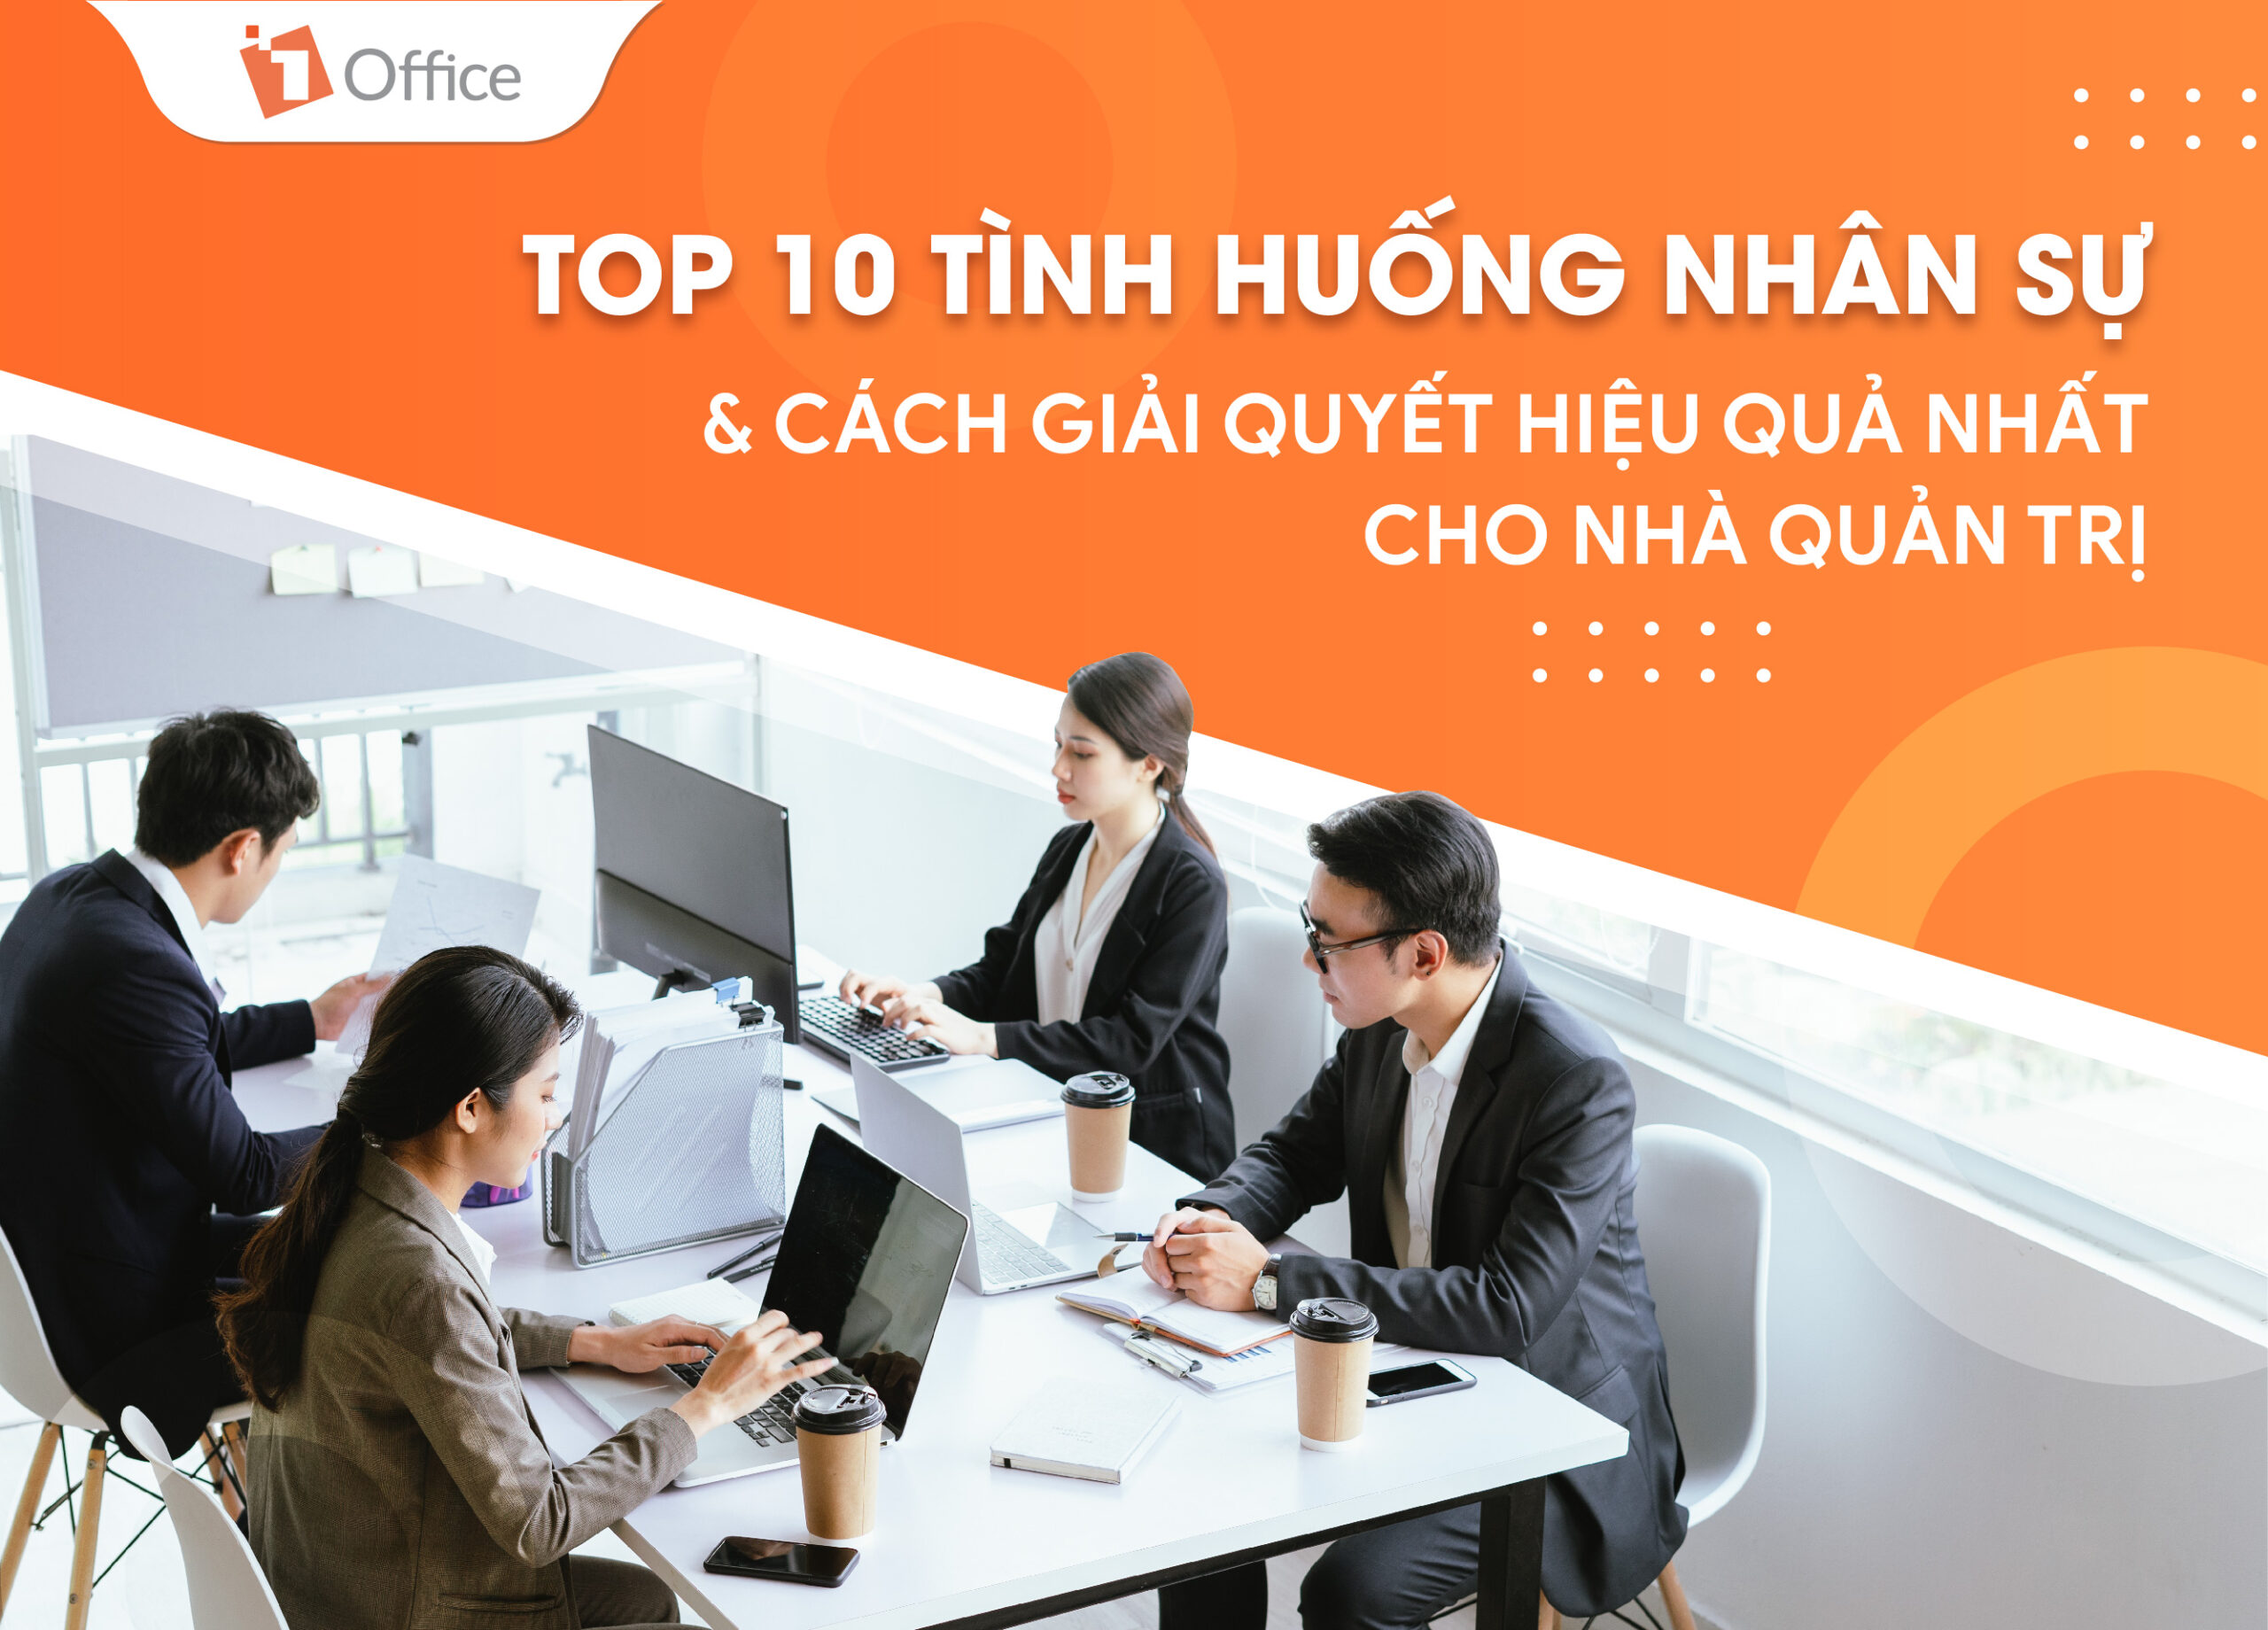 Top 10 tình huống nhân sự và cách giải quyết hiệu quả nhất cho nhà quản trị